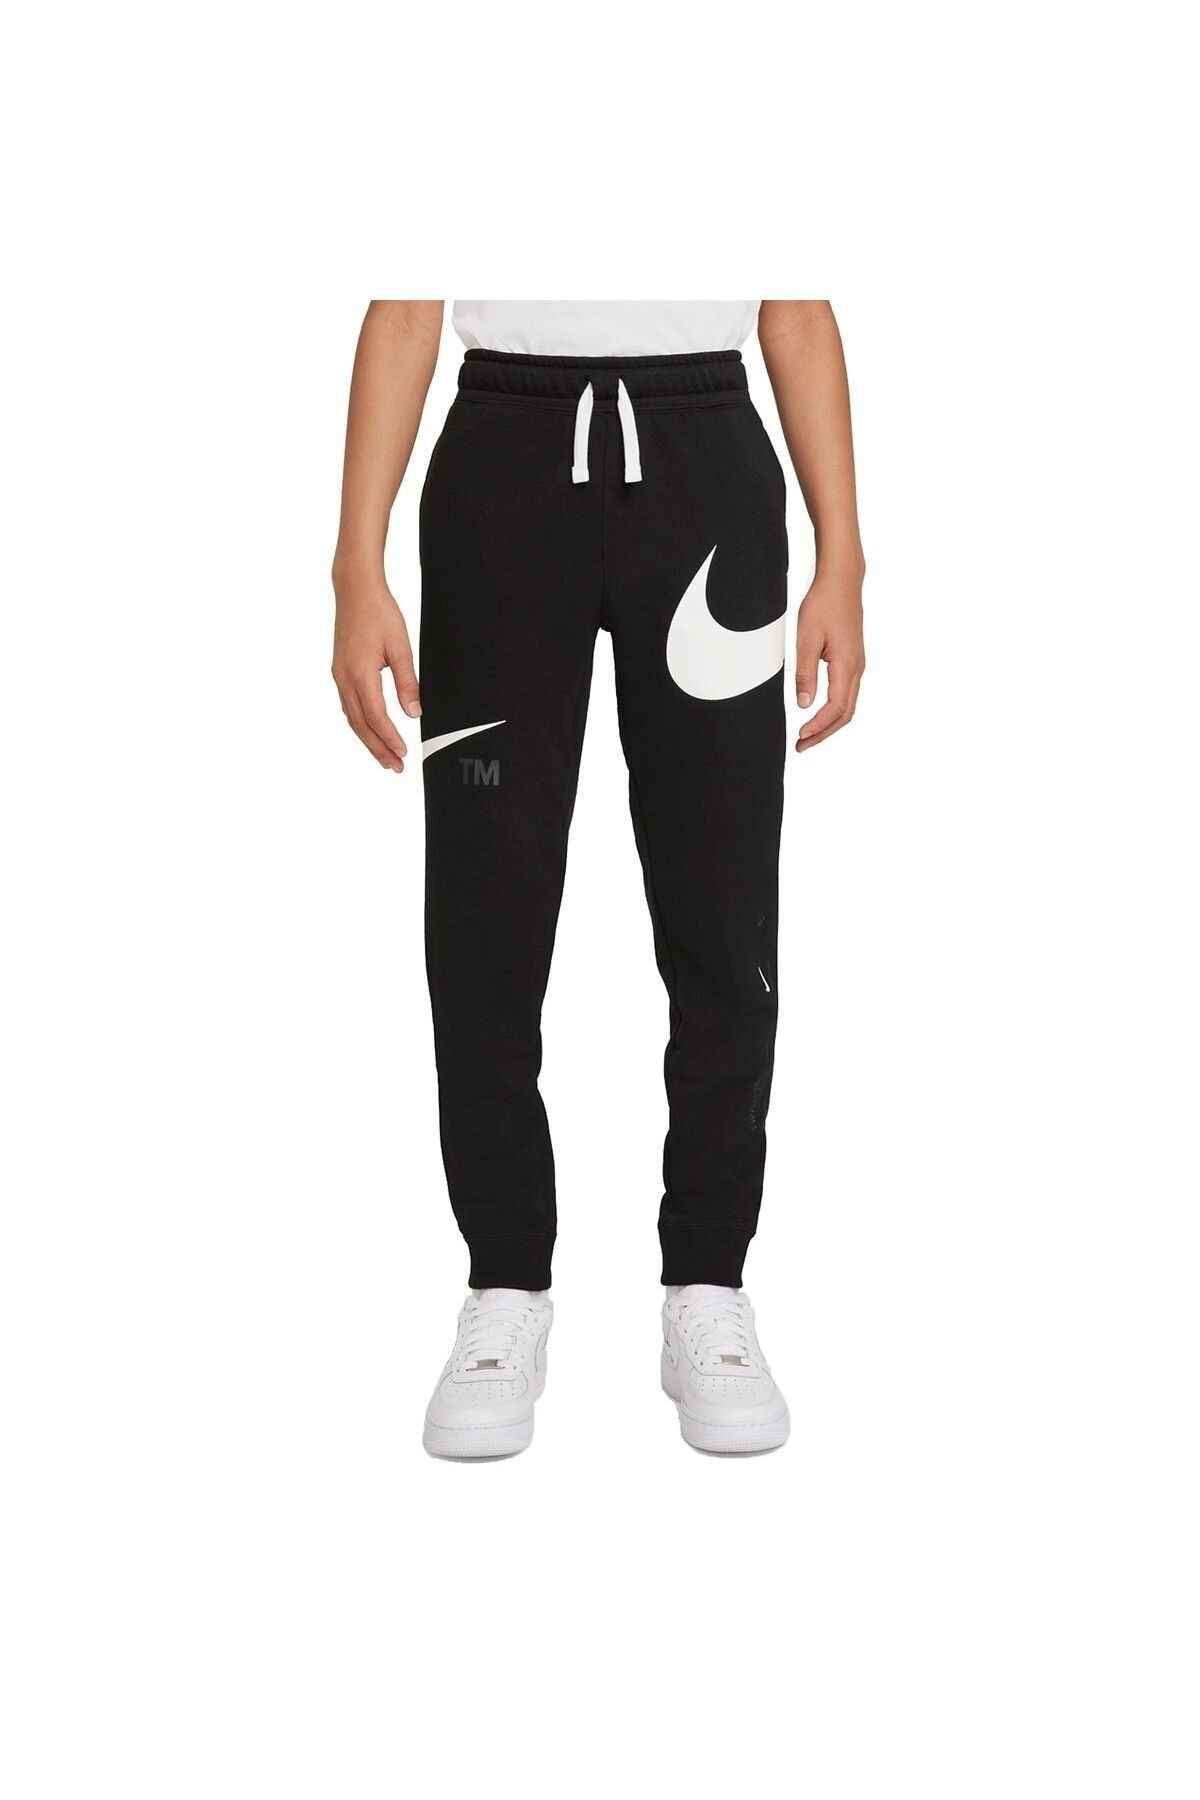 Nike Sportswear Swoosh Fleece (Boys') Kids Sweatpants DD8721-010 - Trendyol